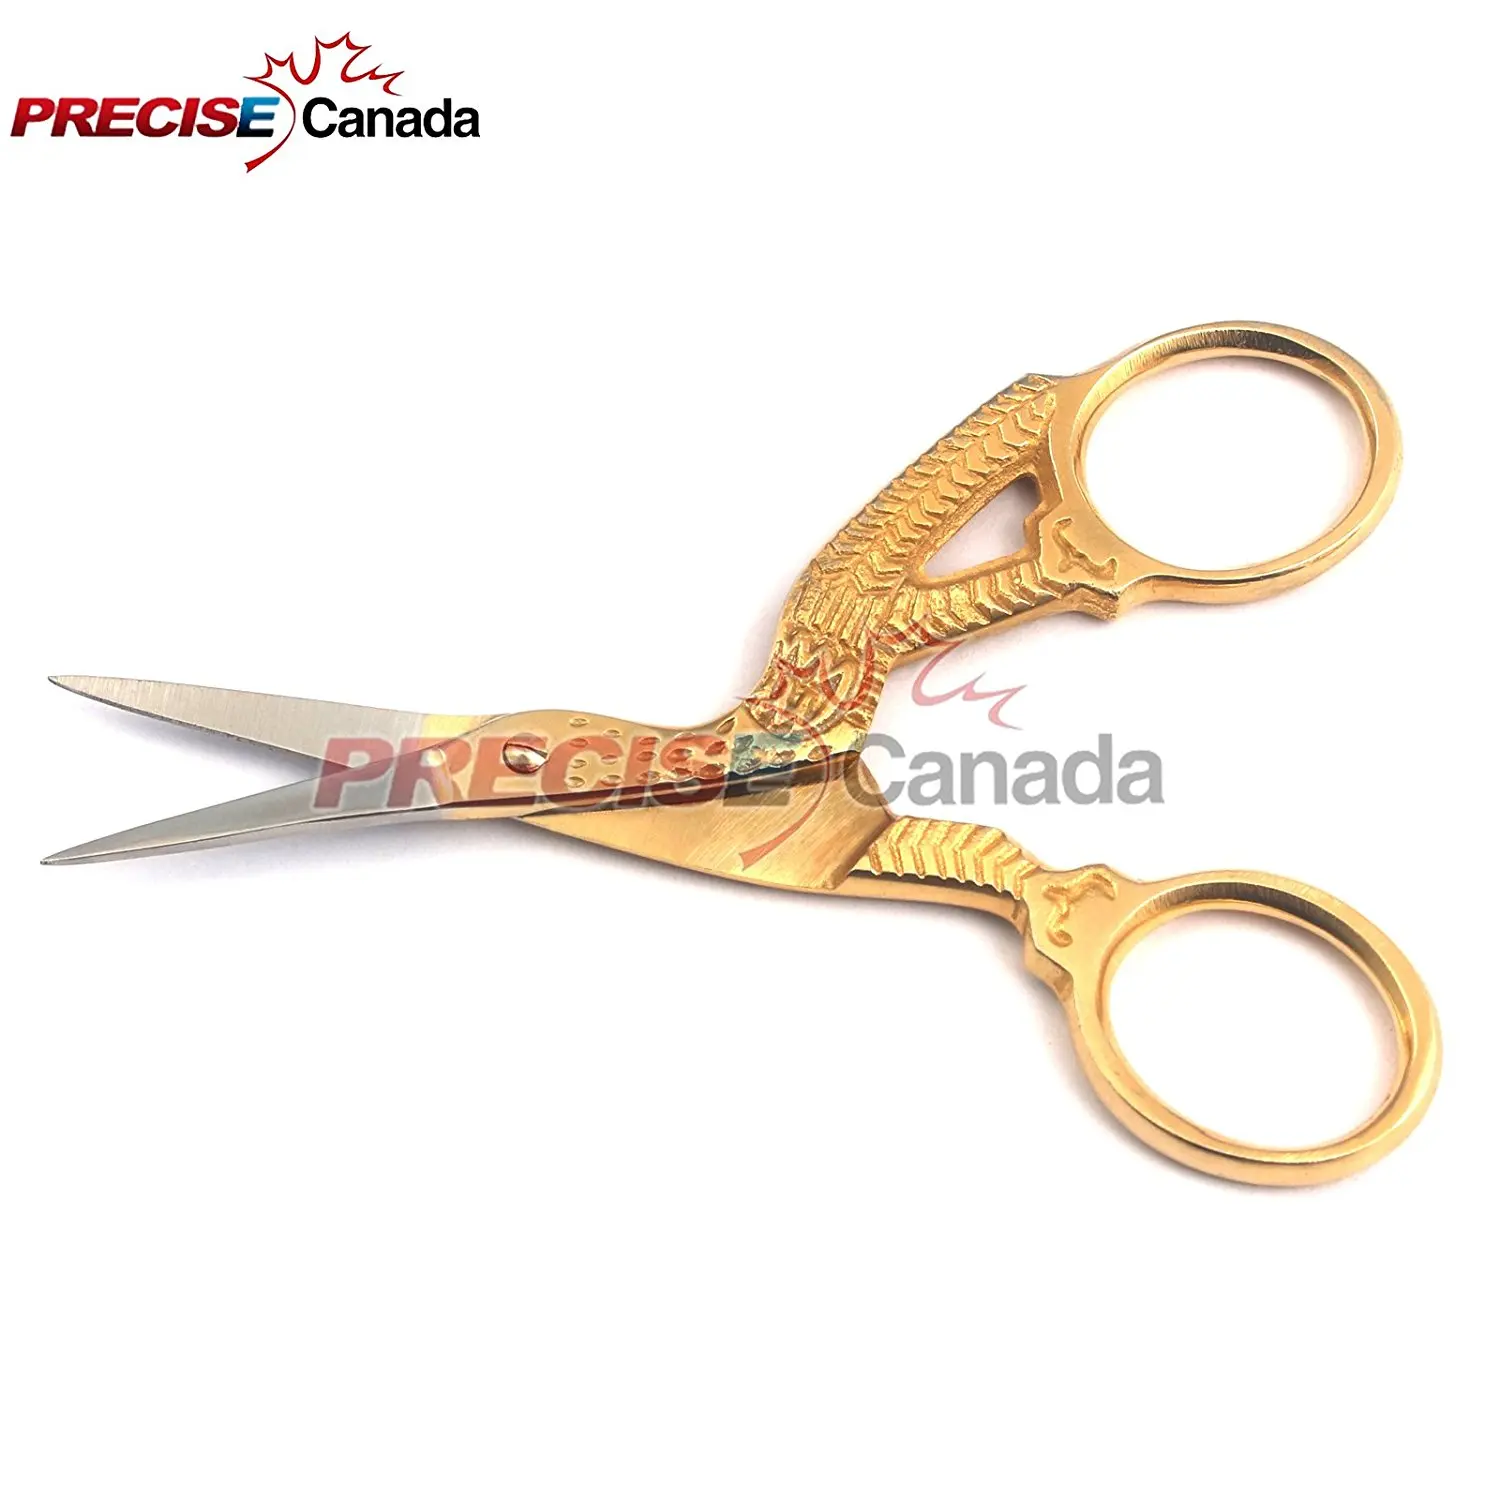 sewing scissors canada